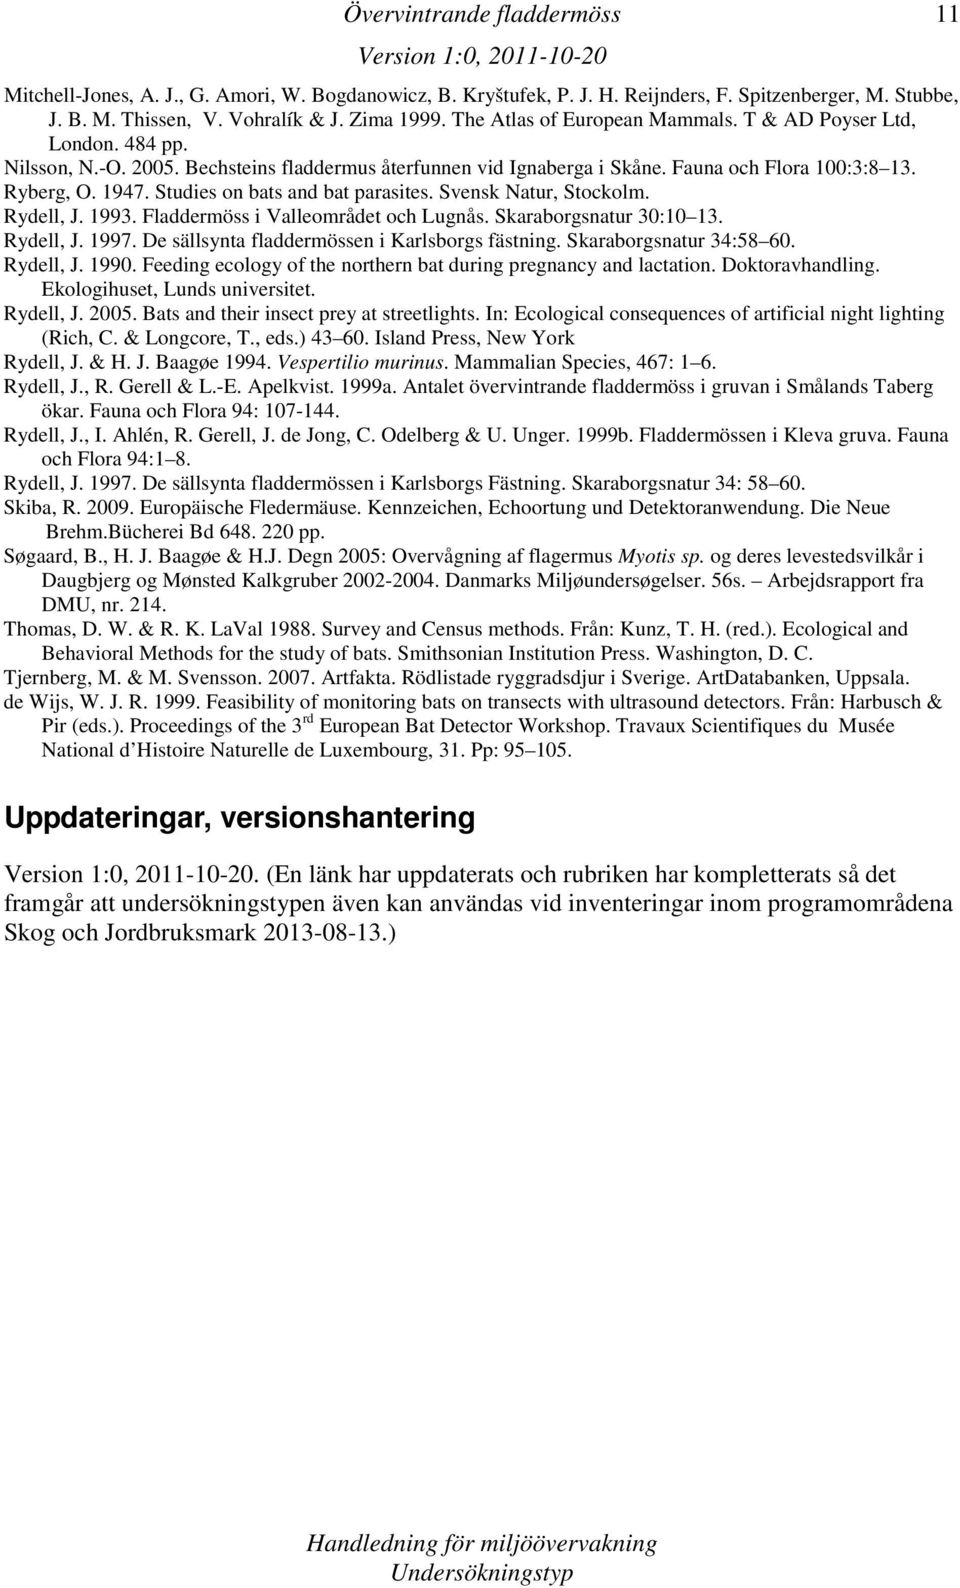 Svensk Natur, Stockolm. Rydell, J. 1993. Fladdermöss i Valleområdet och Lugnås. Skaraborgsnatur 30:10 13. Rydell, J. 1997. De sällsynta fladdermössen i Karlsborgs fästning. Skaraborgsnatur 34:58 60.